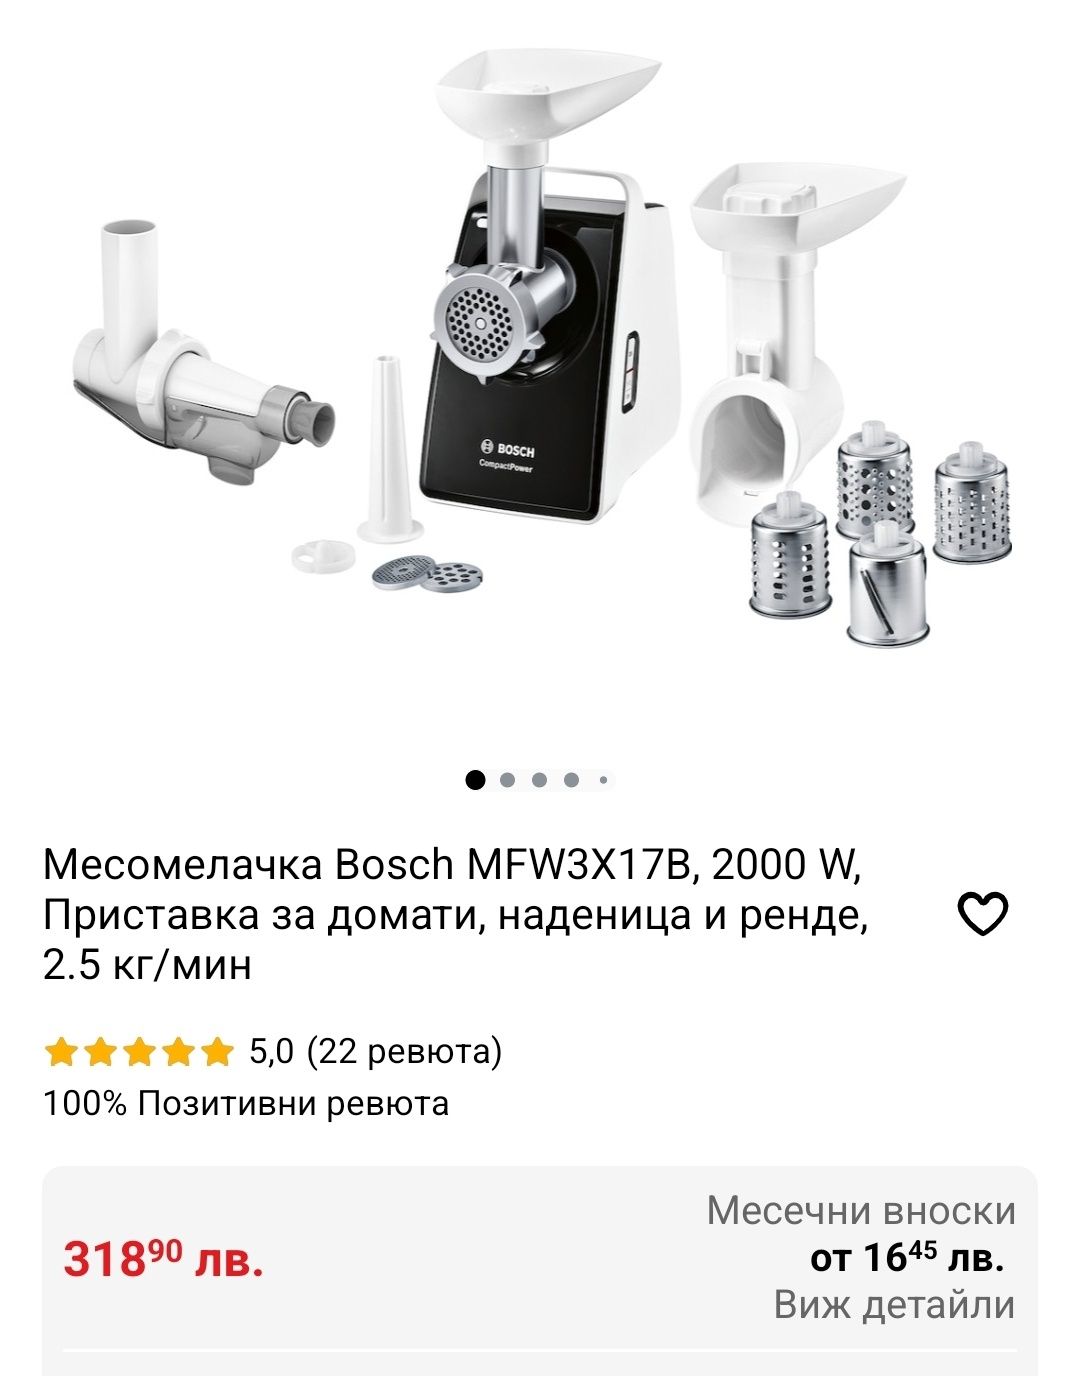 Месомелачка Bosch MFW3X17B + рендета 2000W. ГАРАНЦИЯ